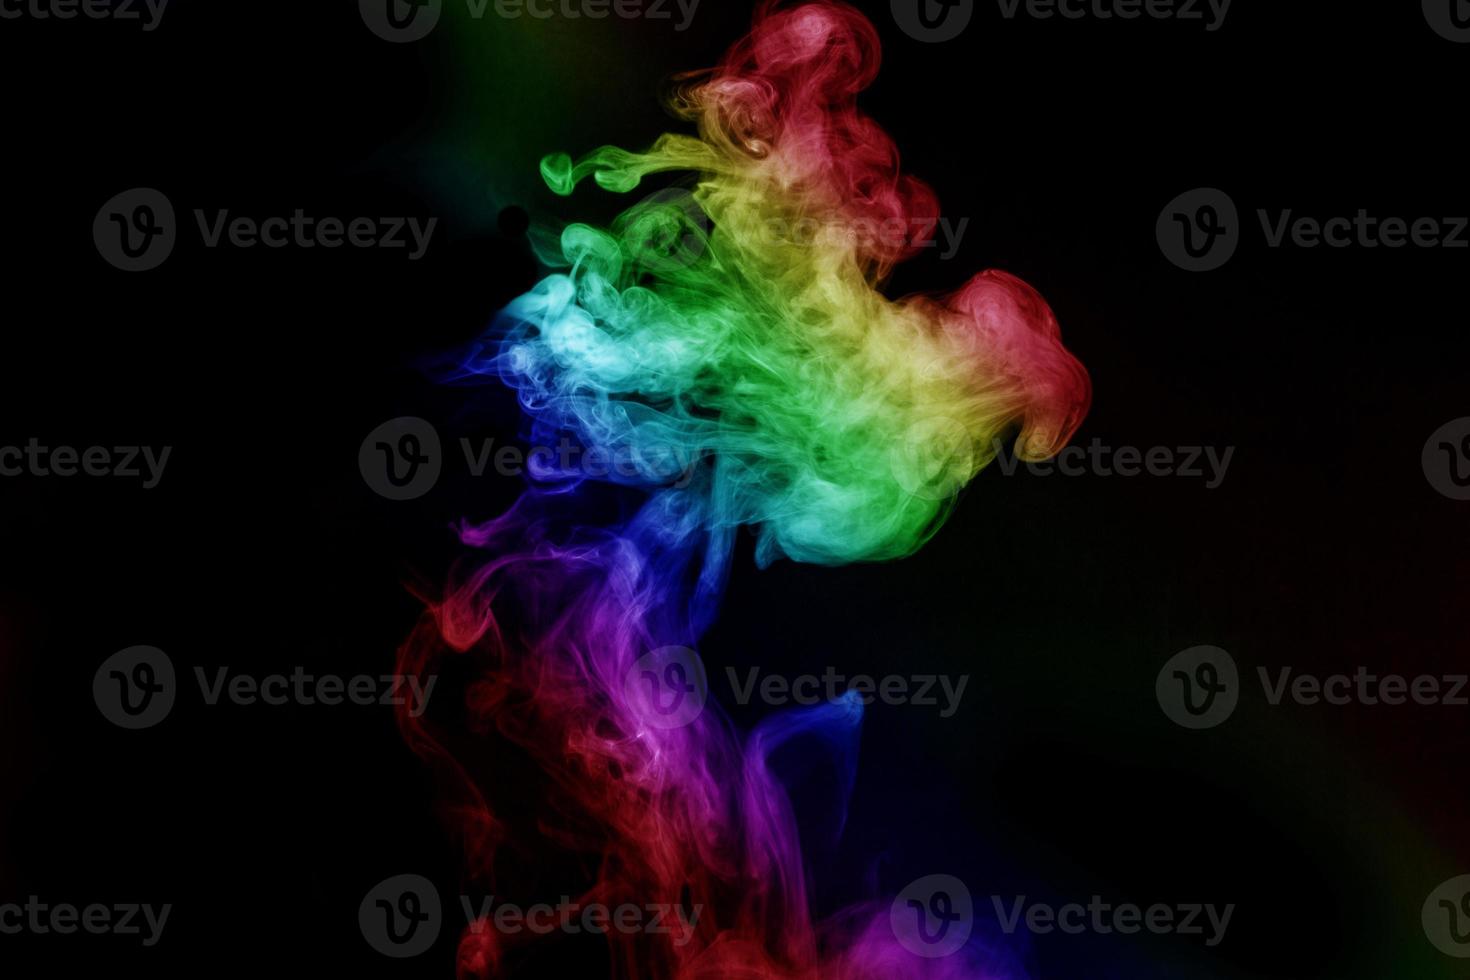 abstrakt rök isolerad på svart bakgrund, regnbågspulver foto